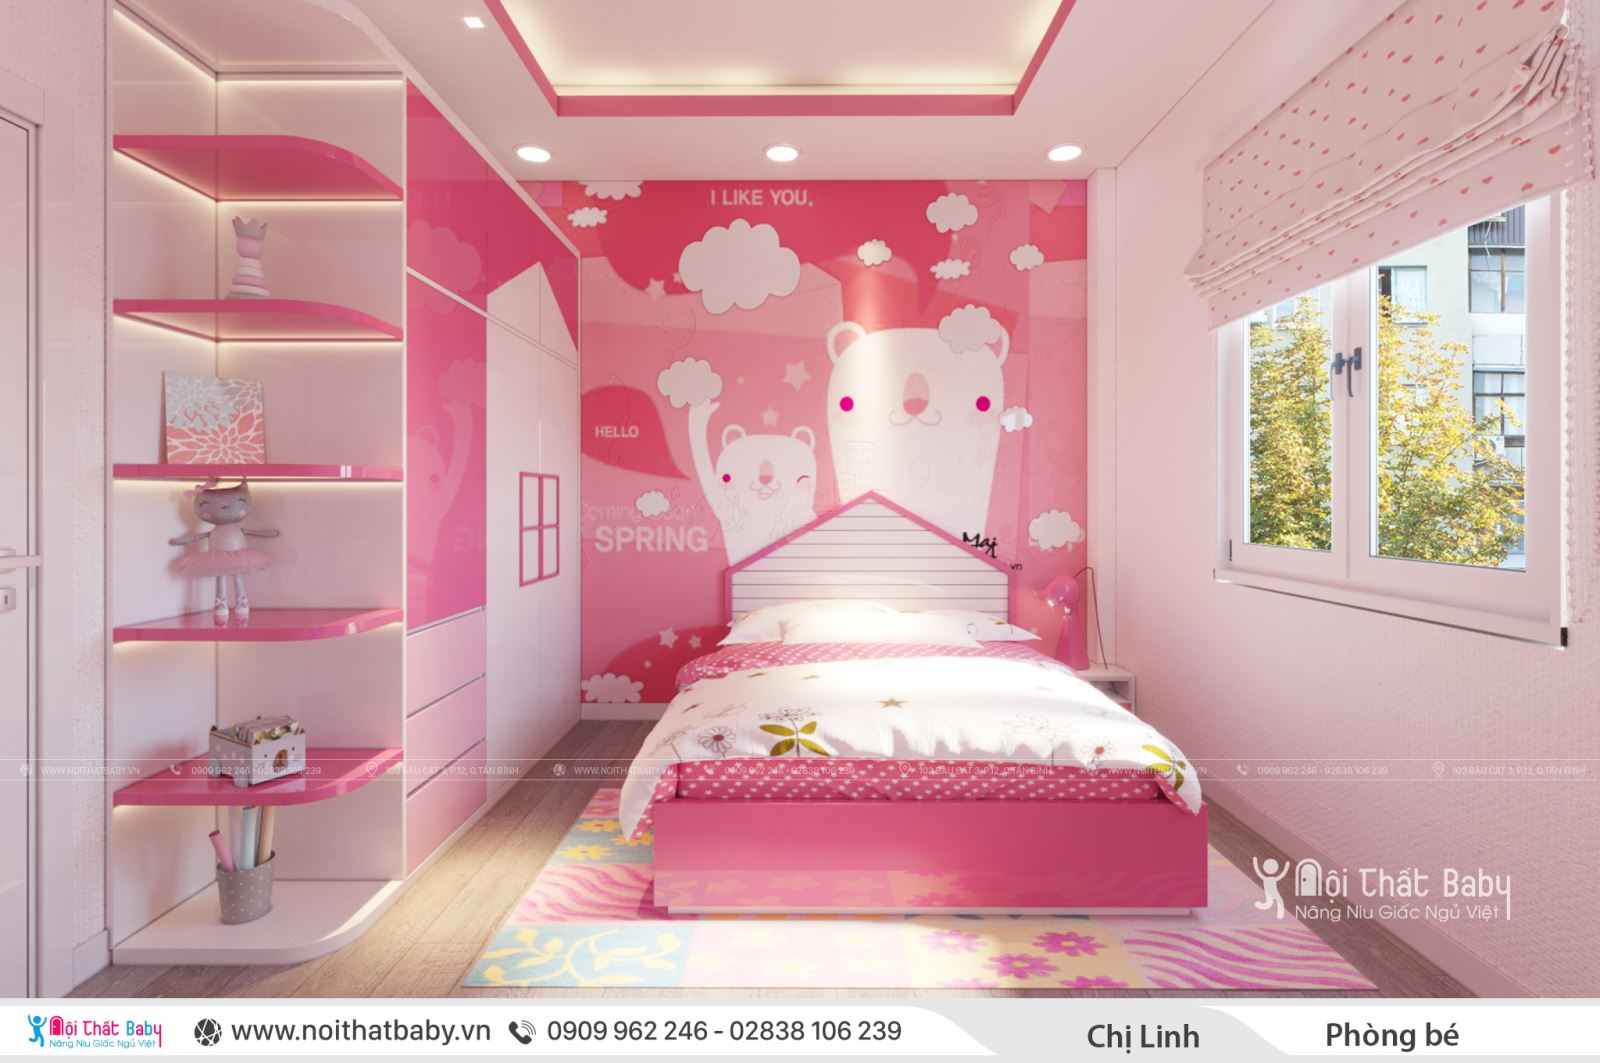 Những mẫu giường ngủ trẻ em màu hồng dễ thương 